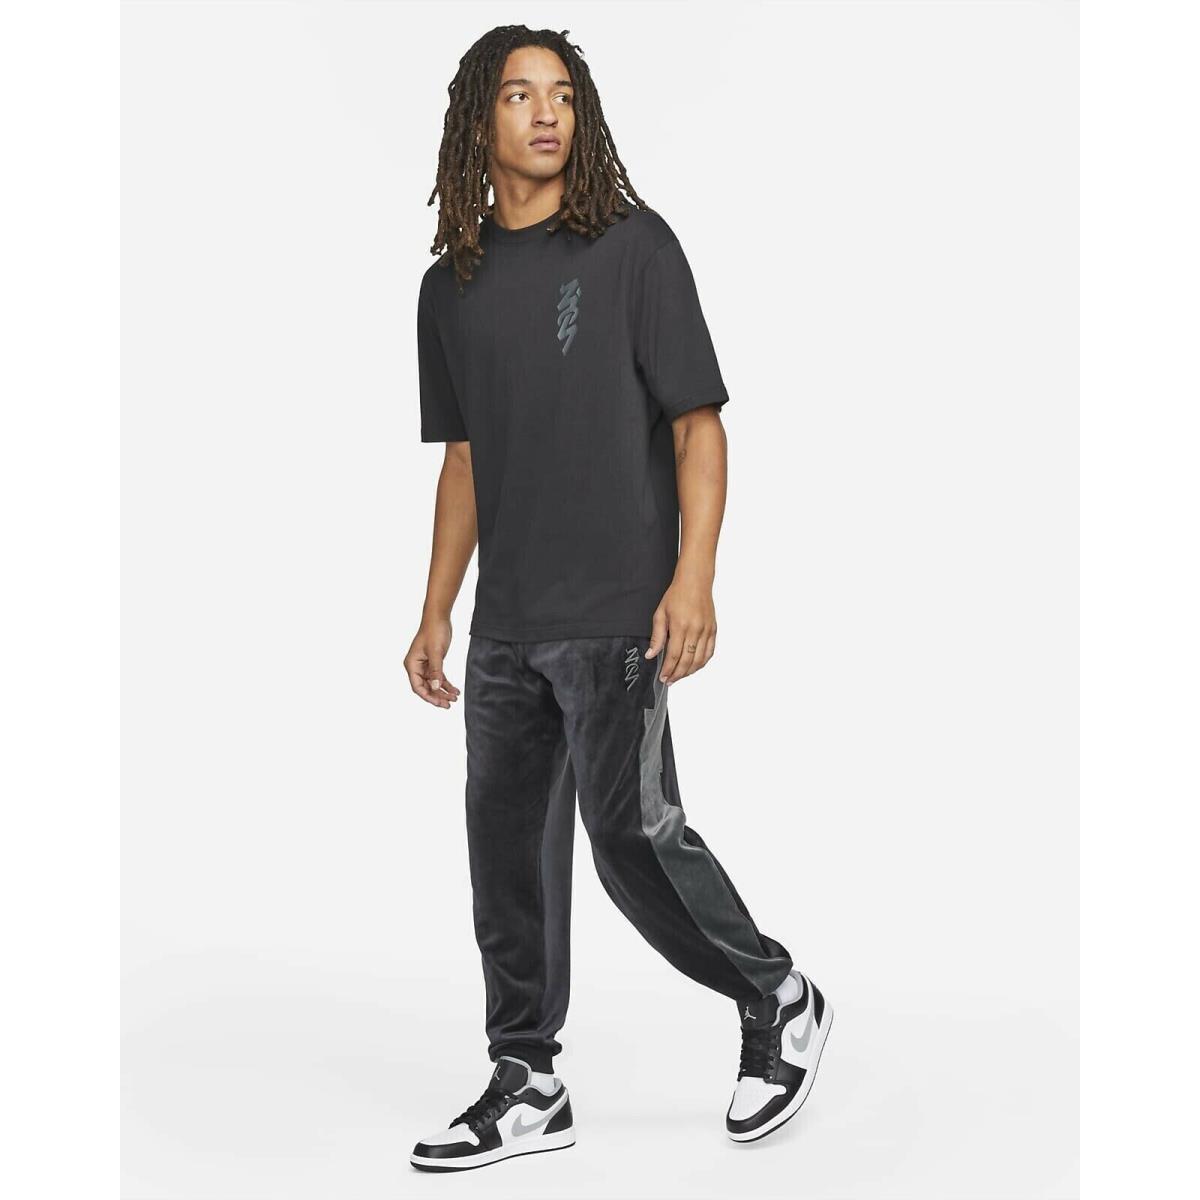 Nike Jordan Zion Tracksuit Jogger Pants Size Xxl Black Comfort DJ5879